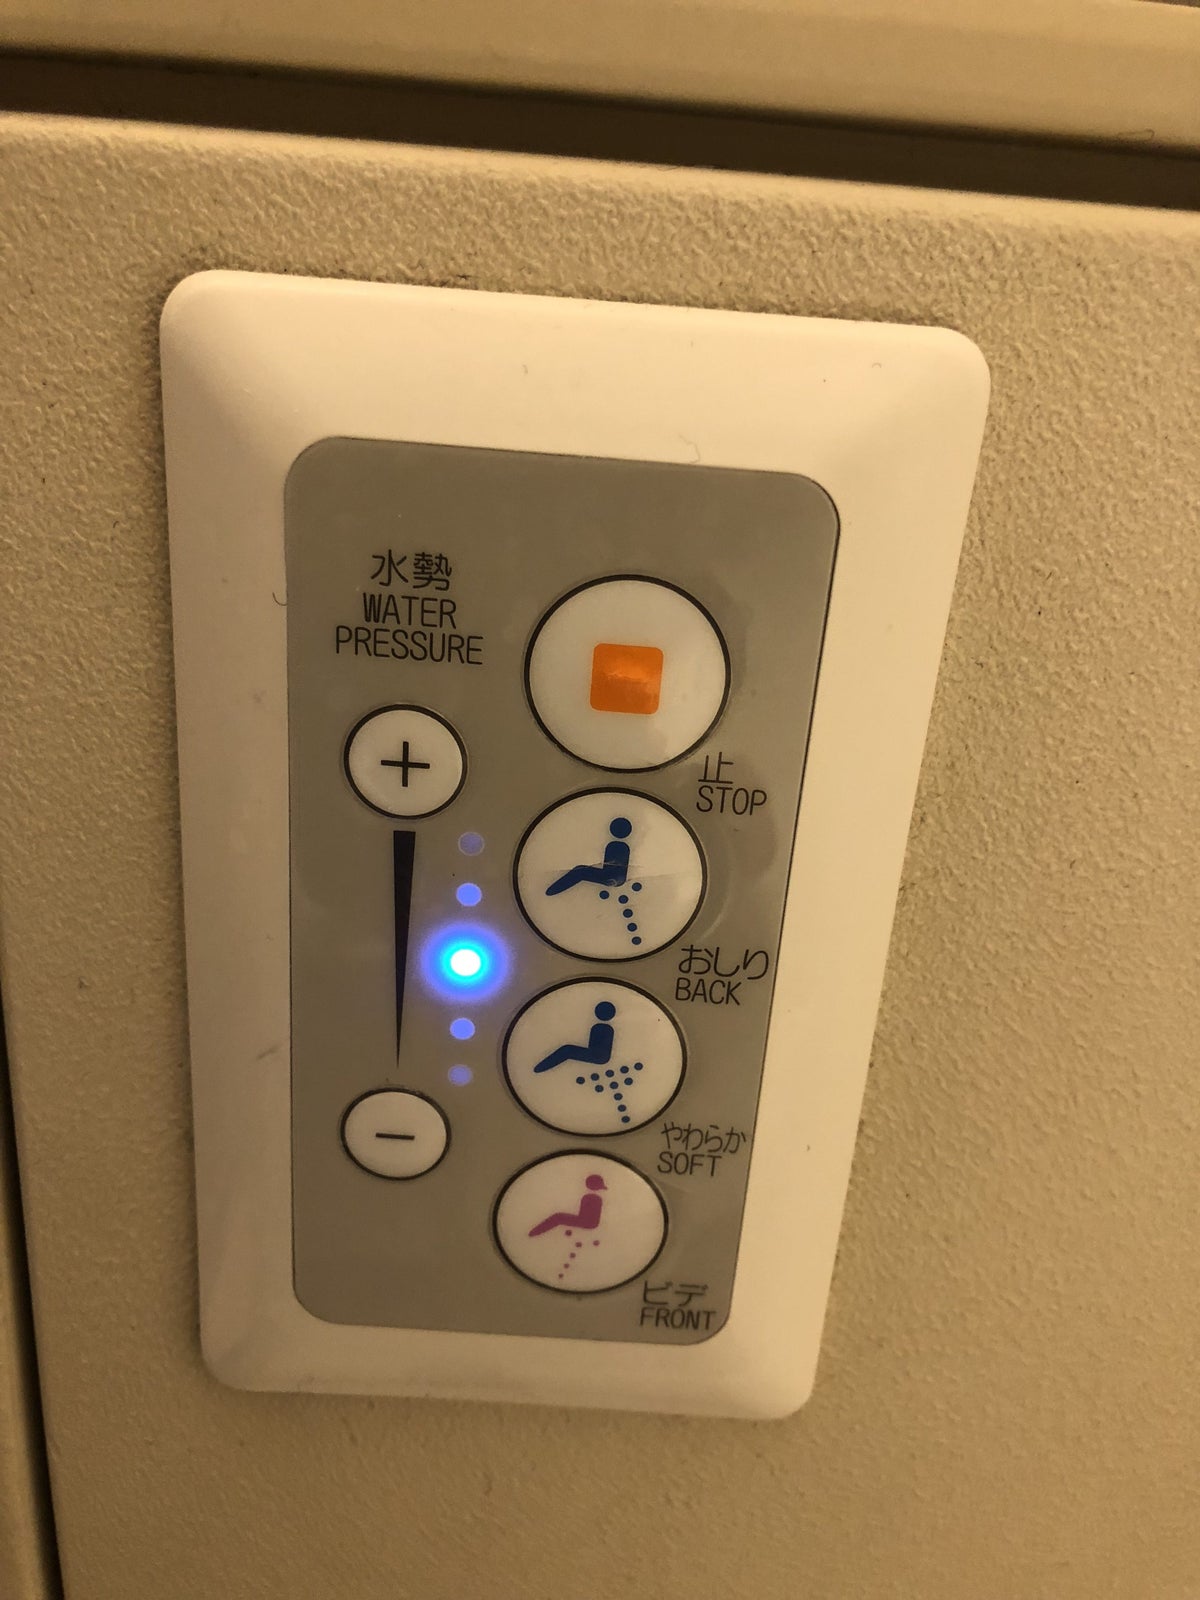 Japan Airlines 777 Business Class Bidet Buttons